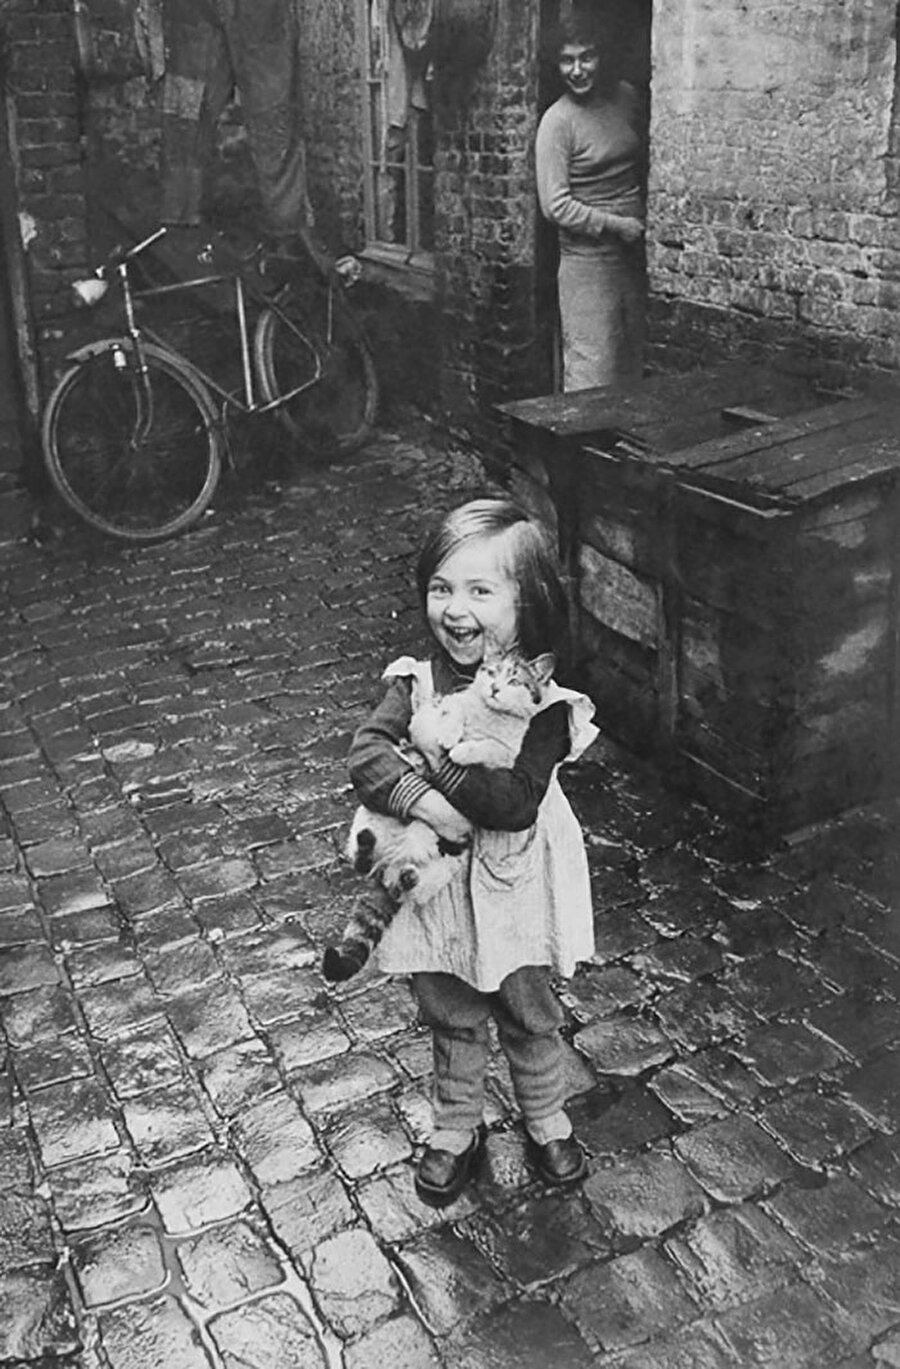 Küçük Fransız kız ve kedisi (1959)

                                    
                                    
                                
                                